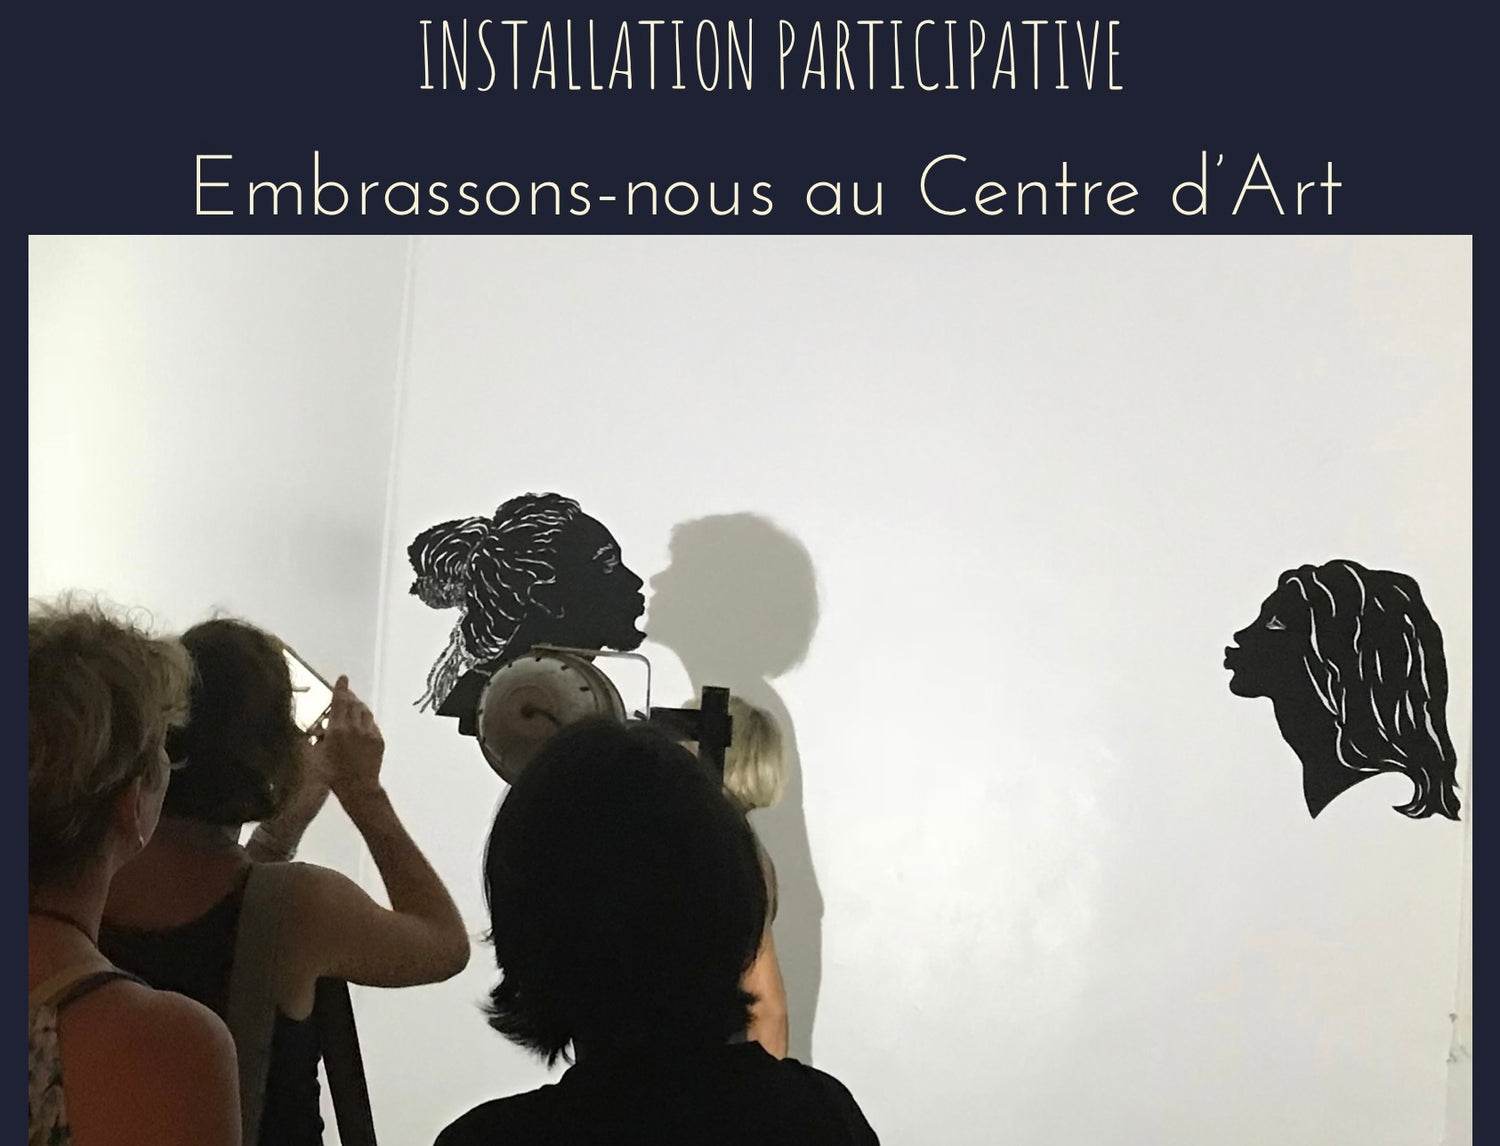 Installation participative Embrassons-nous au Centre d'Art